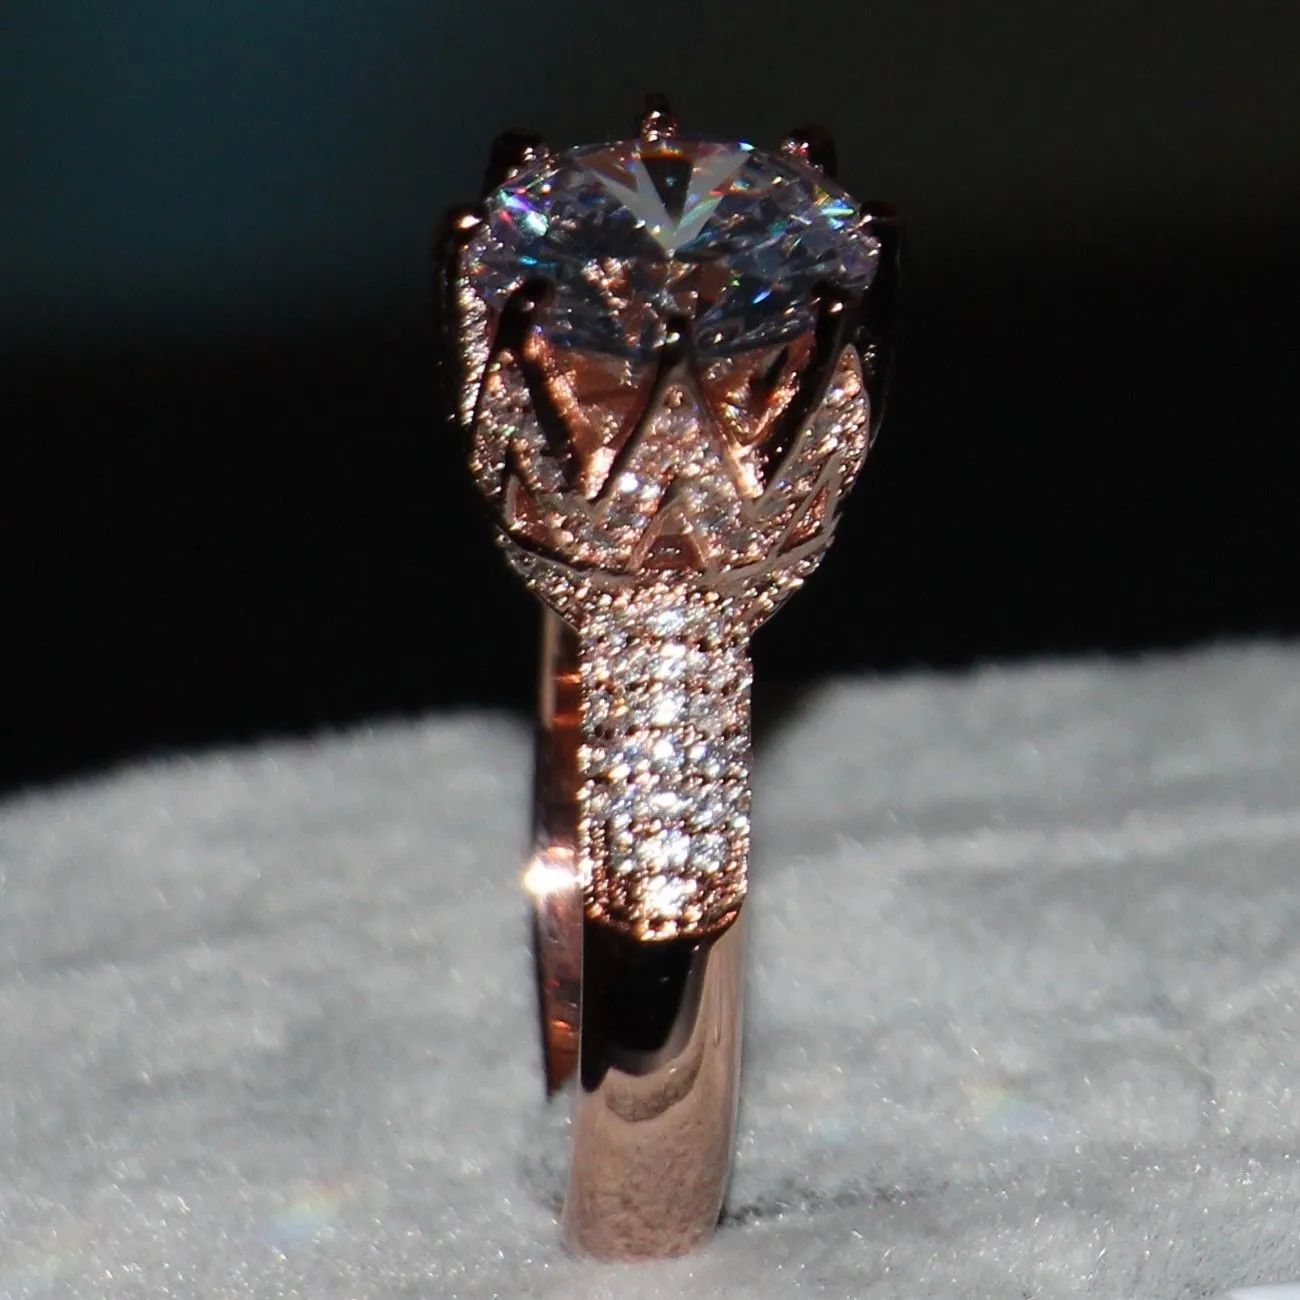 Interi gioielli di moda in argento sterling 925 placcato oro rosa diamante simulato matrimonio donna fascia corona anello regalo 302e